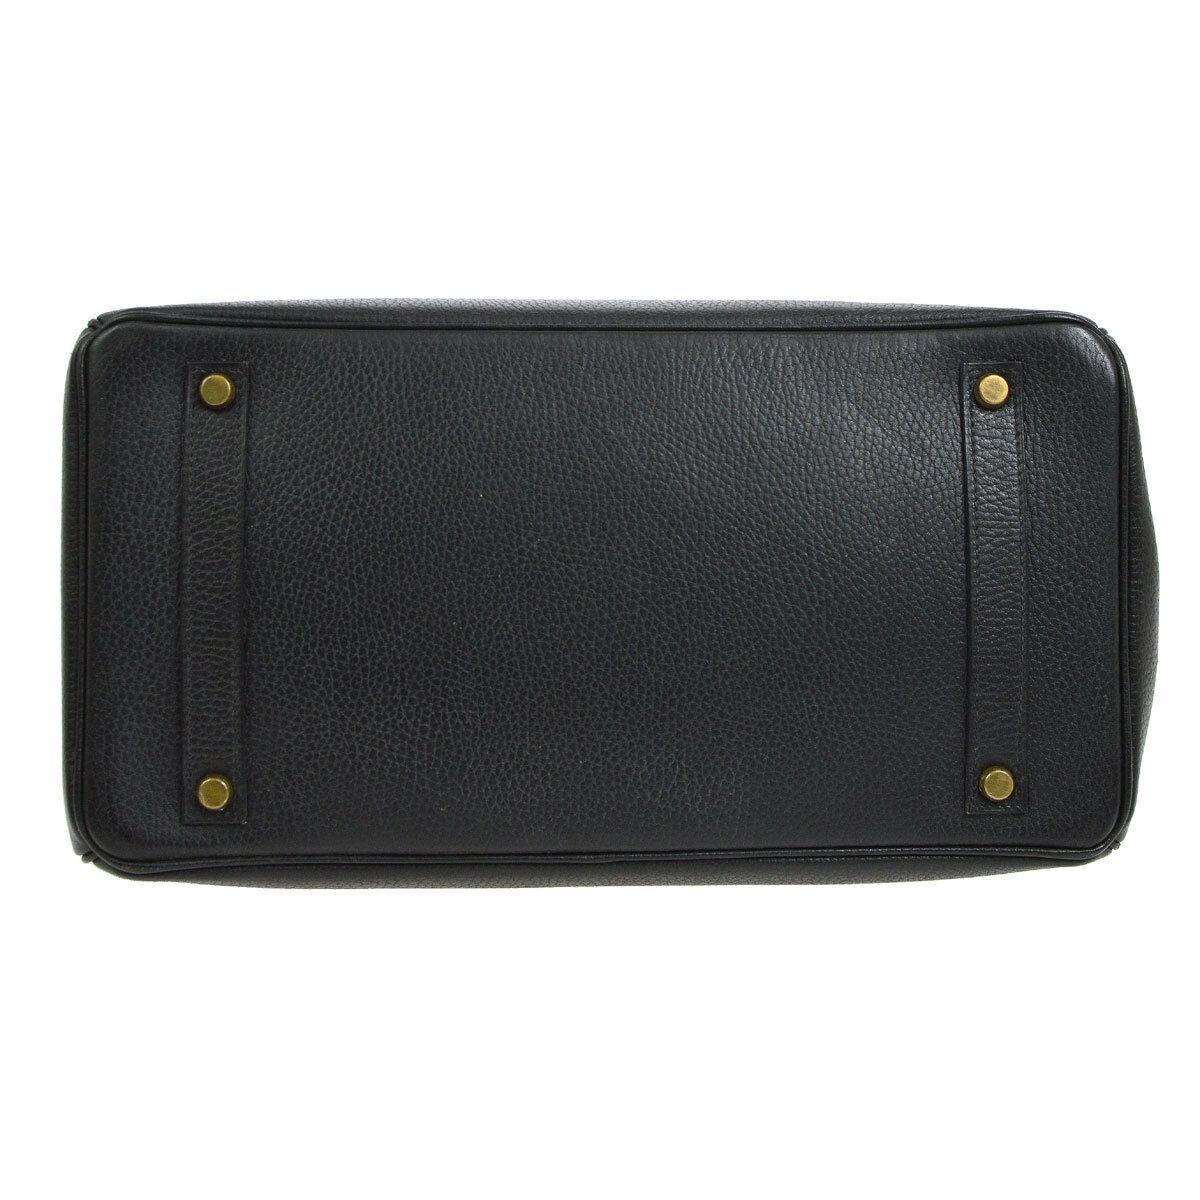 Hermes Birkin 35 Black Leather Gold Top Handle Satchel Travel Bag 1